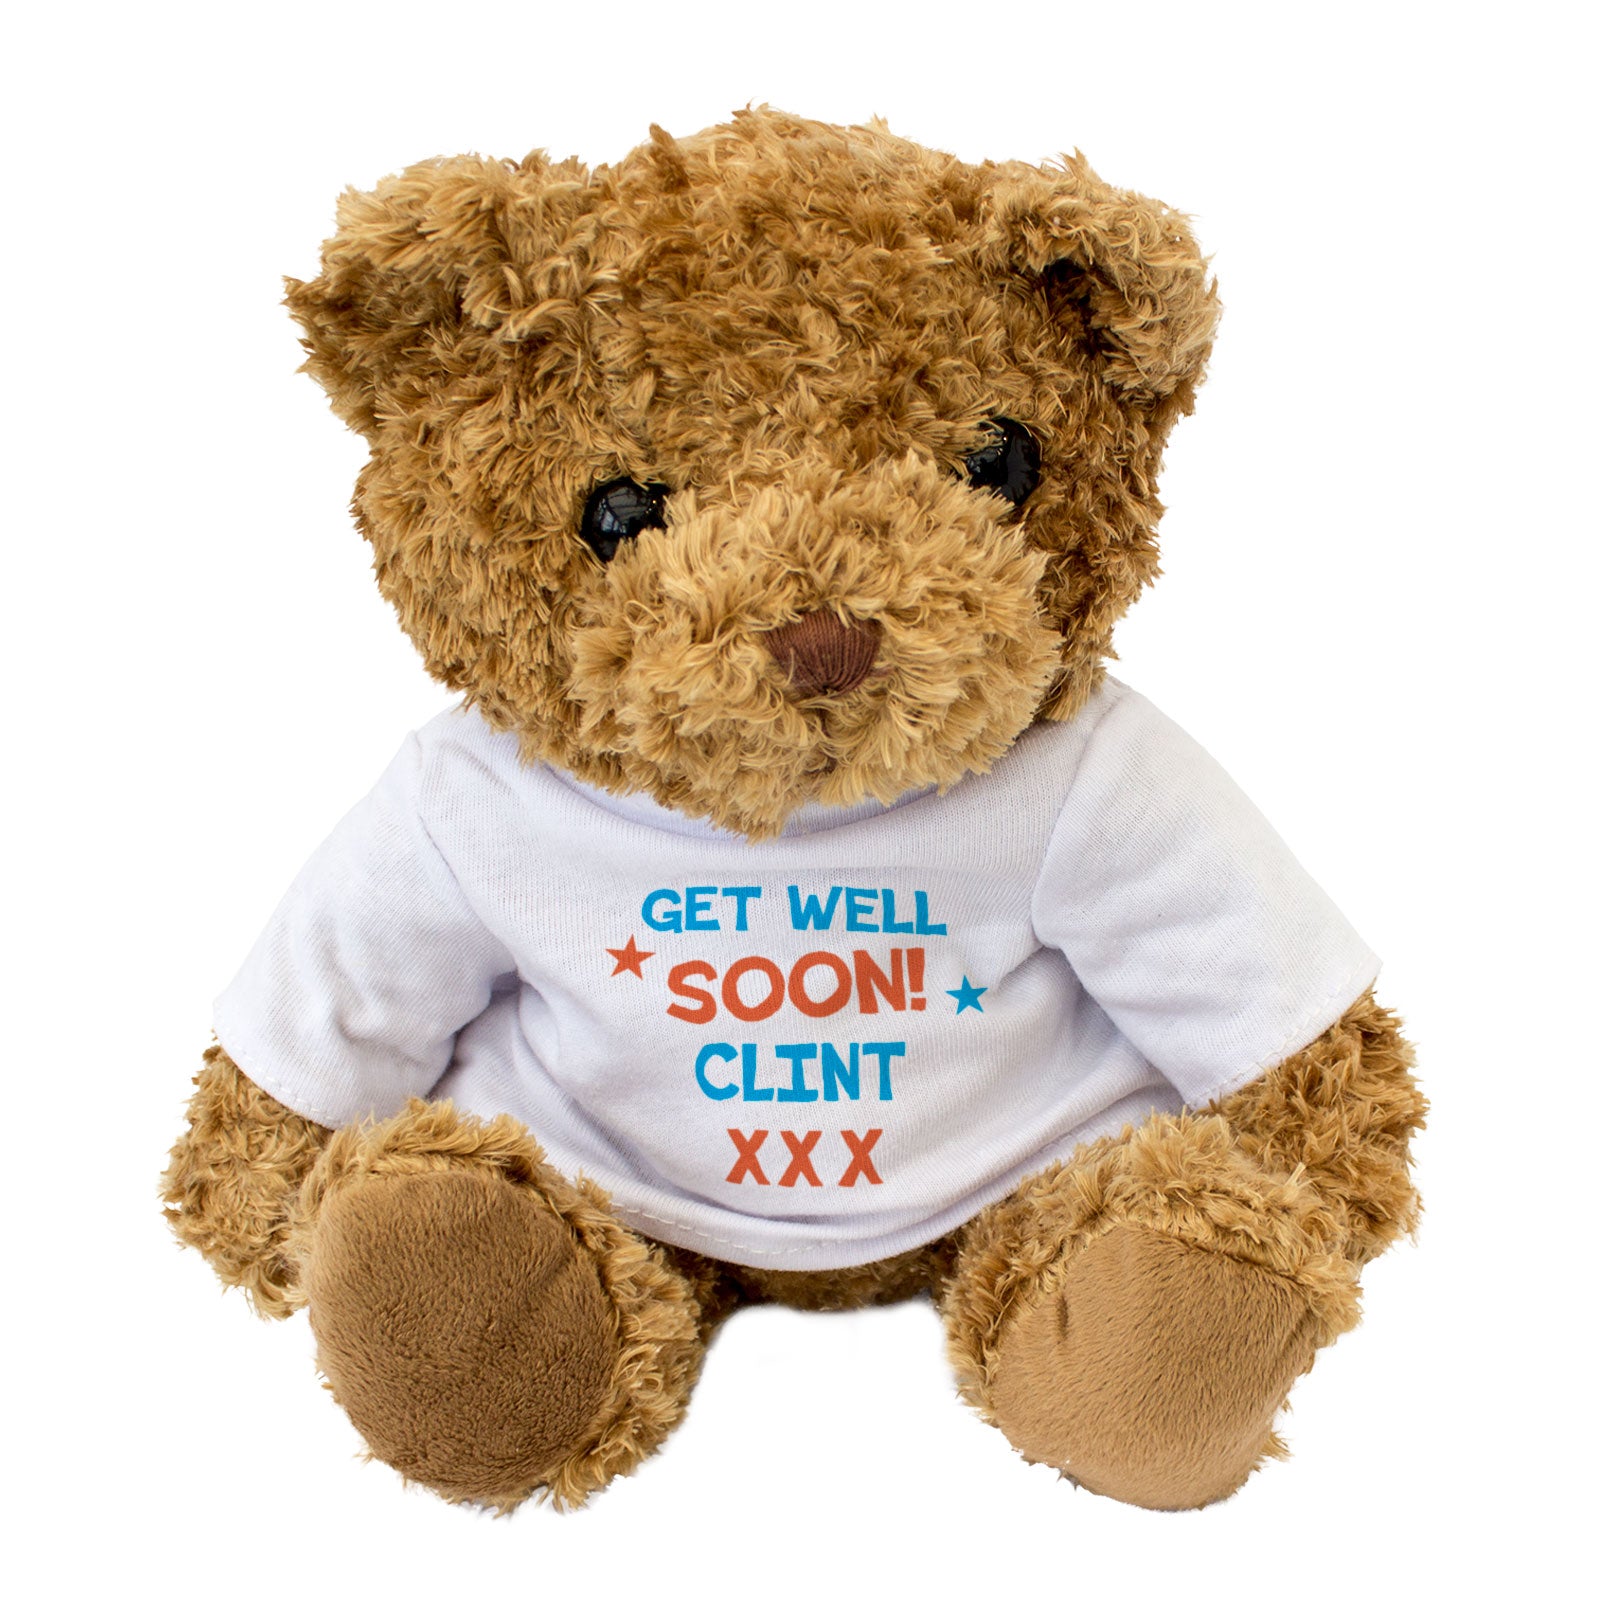 Get Well Soon Clint - Teddy Bear